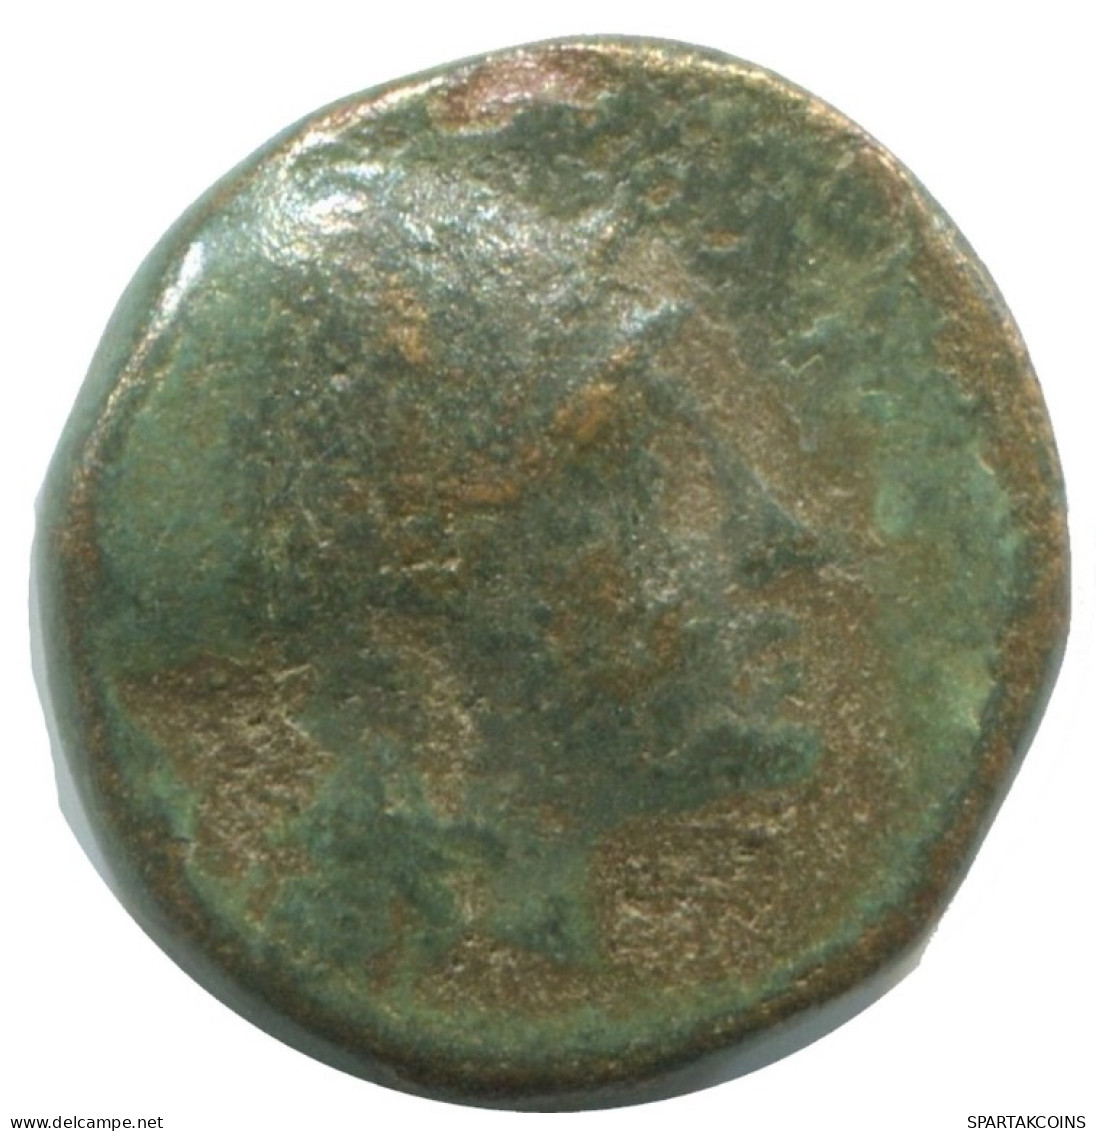 ONION AUTHENTIC ORIGINAL ANCIENT GREEK Coin 2.2g/17mm #AG208.12.U.A - Grecques